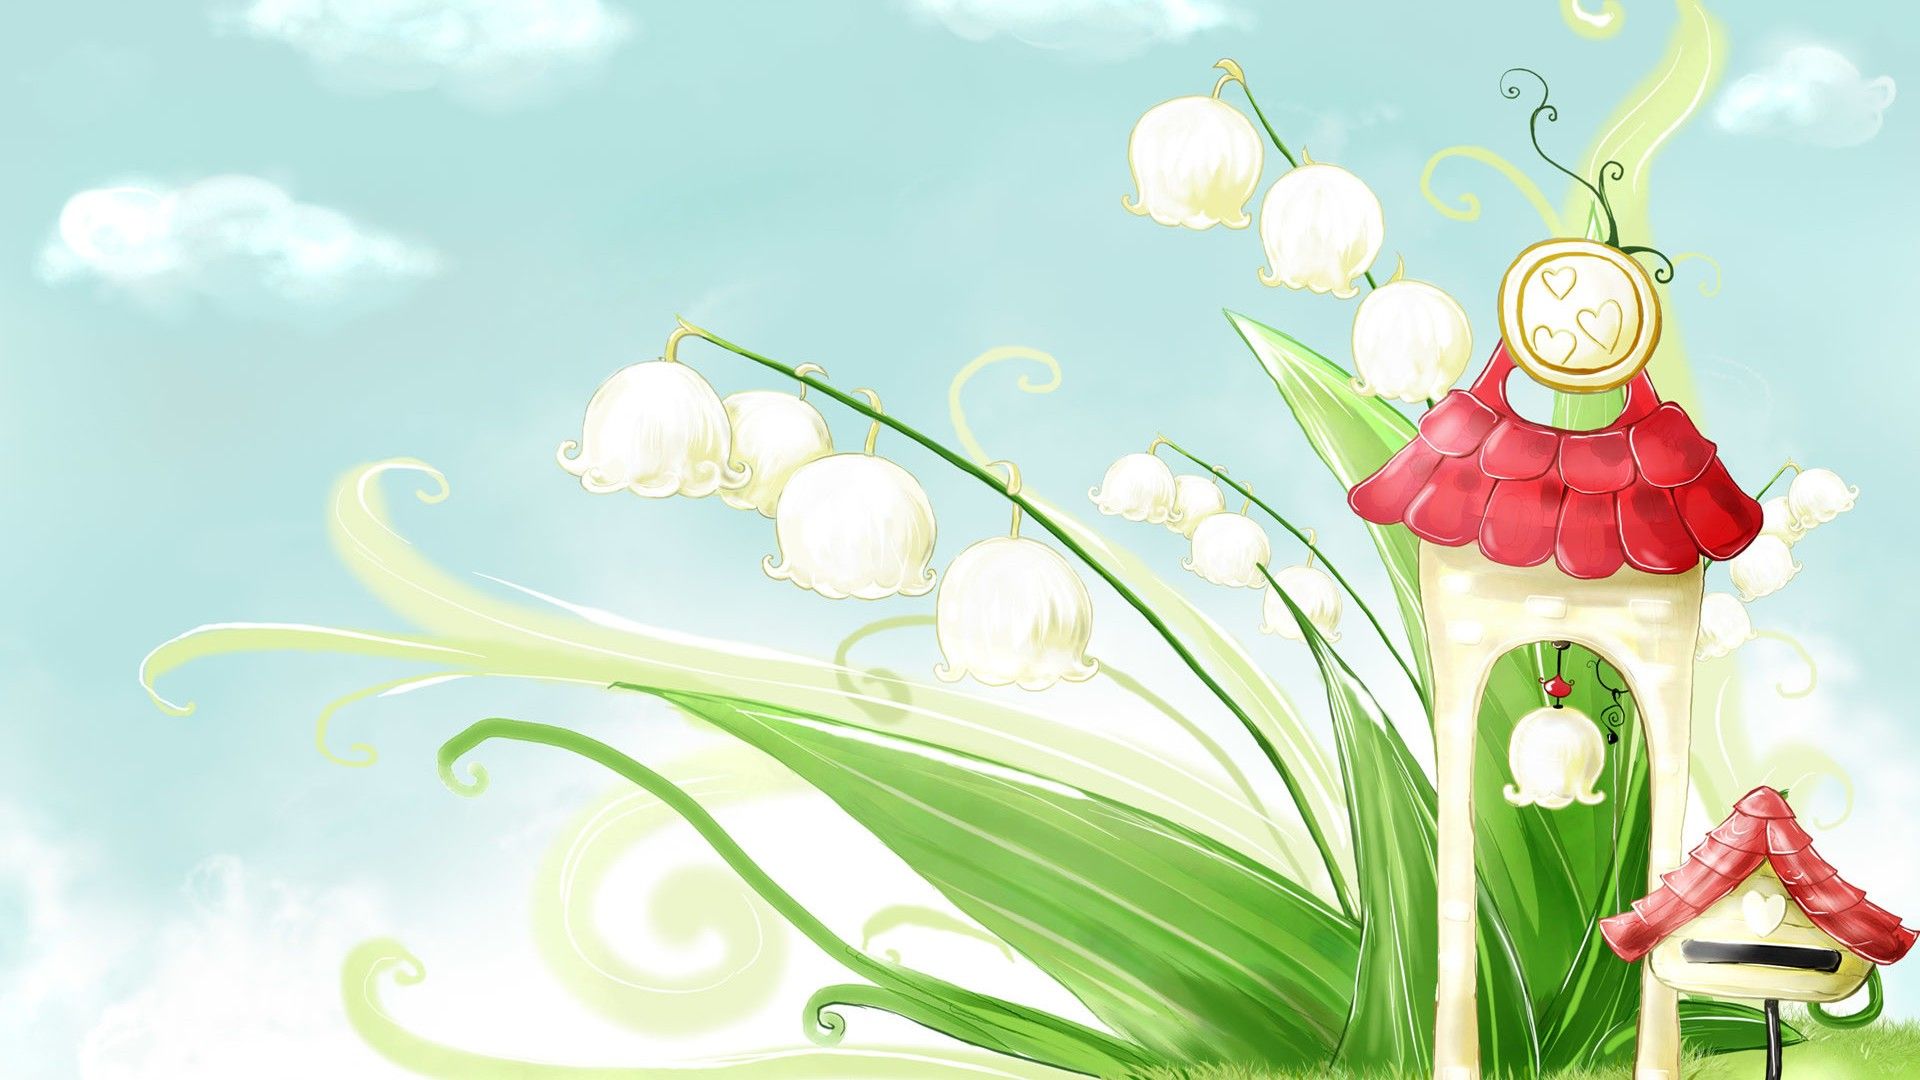 نقاشی فانتزی گل و قارچ بهاری برای والپیپر SamSung